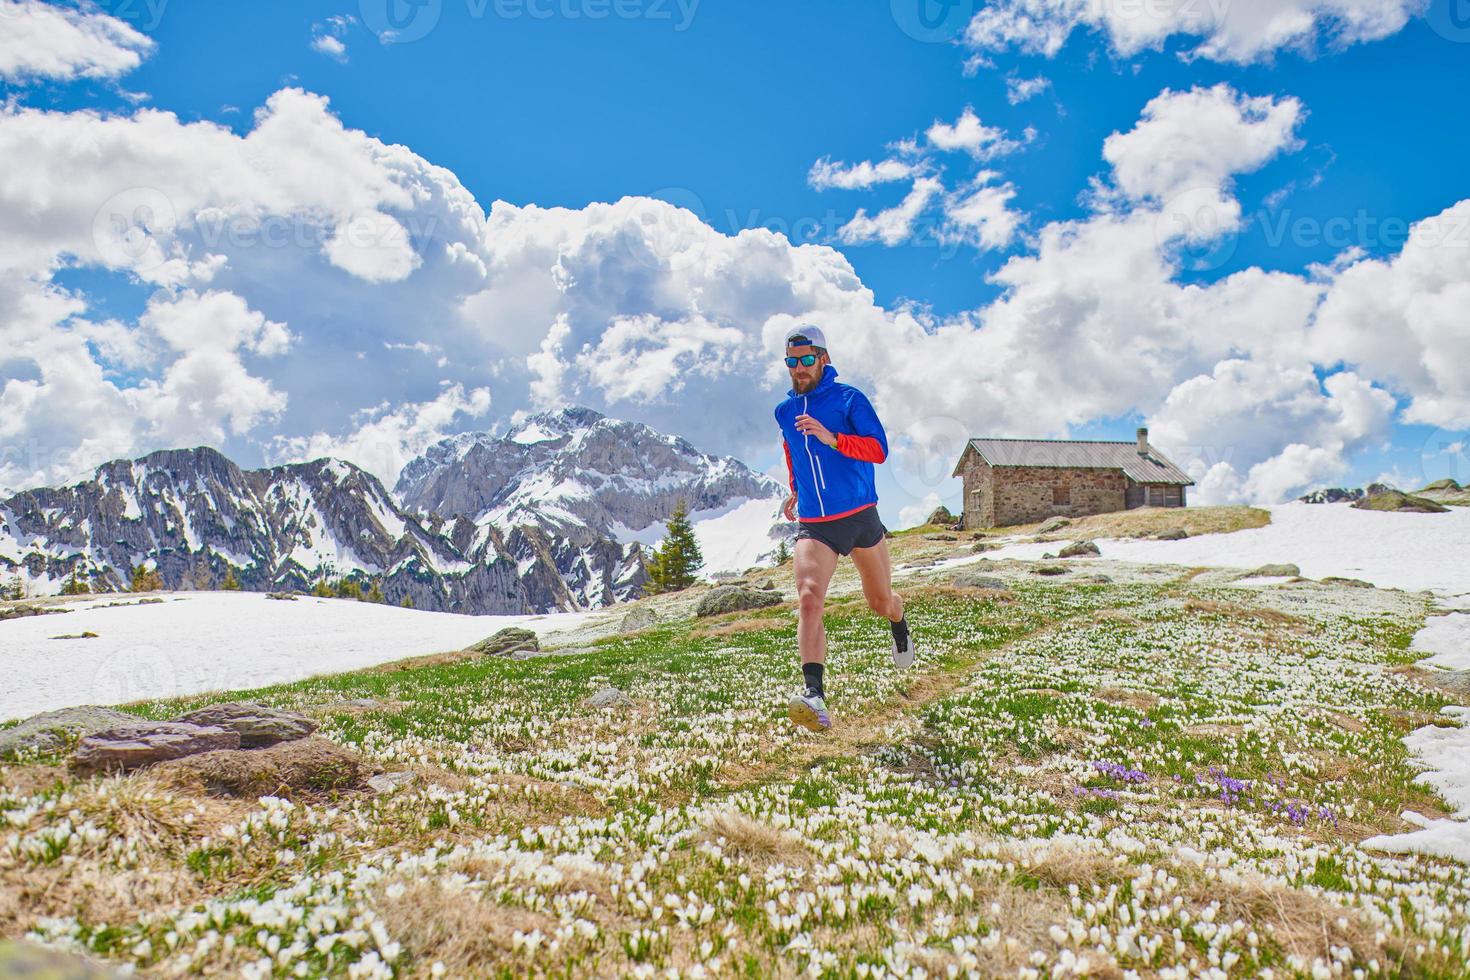 corredor atleta entre las flores de azafrán después de la disolución de la nieve foto